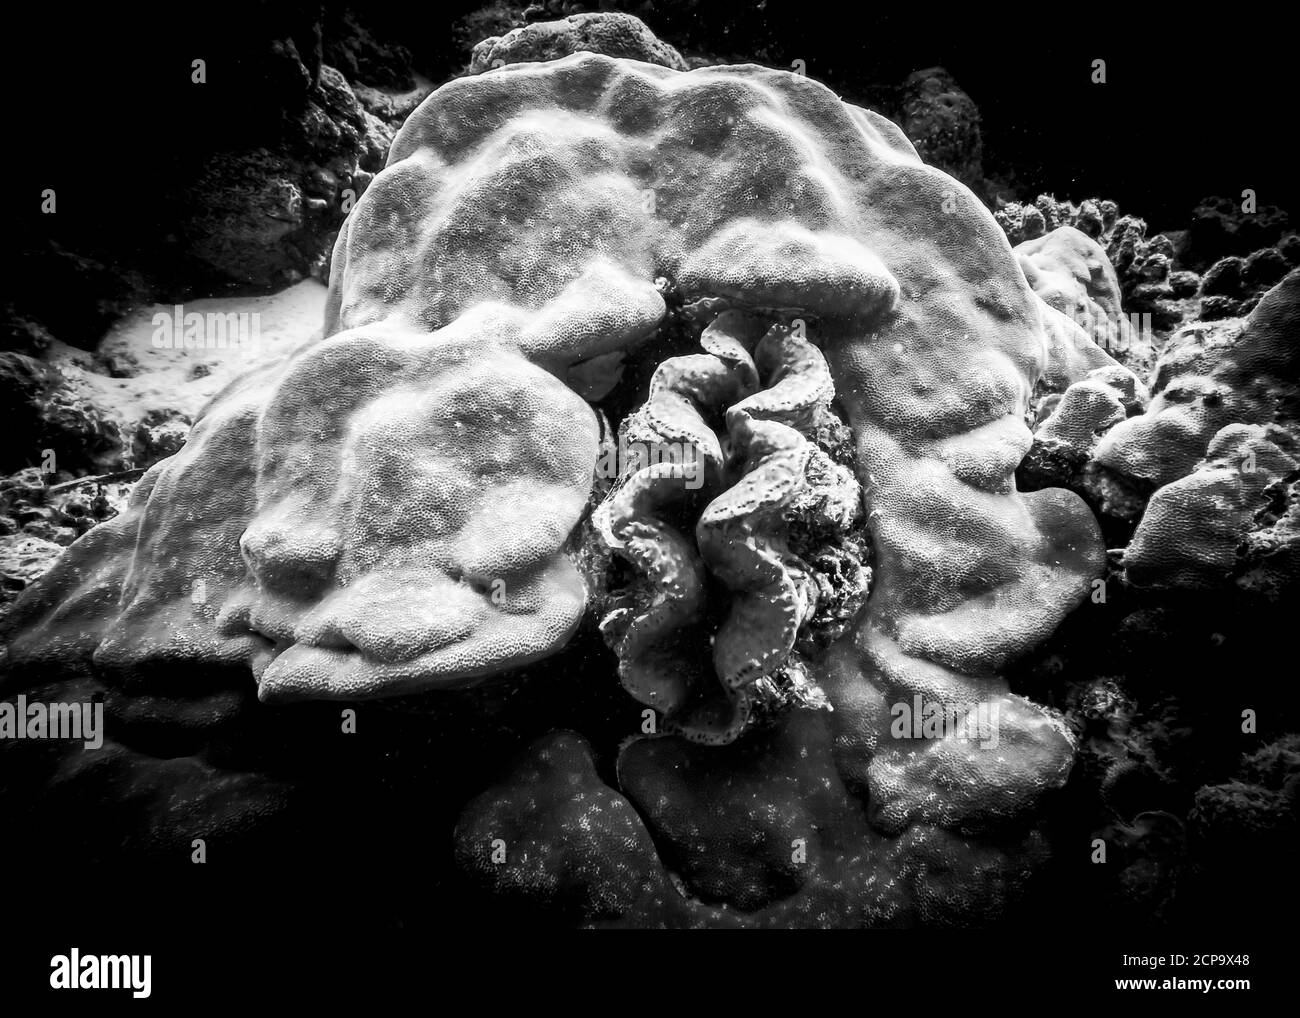 Die glatten Linien des Meeresschwamms und der Meeresmuschel, die in ihm auf dem Grund des Indischen Ozeans gewachsen ist. Foto in Schwarzweiß. Stockfoto